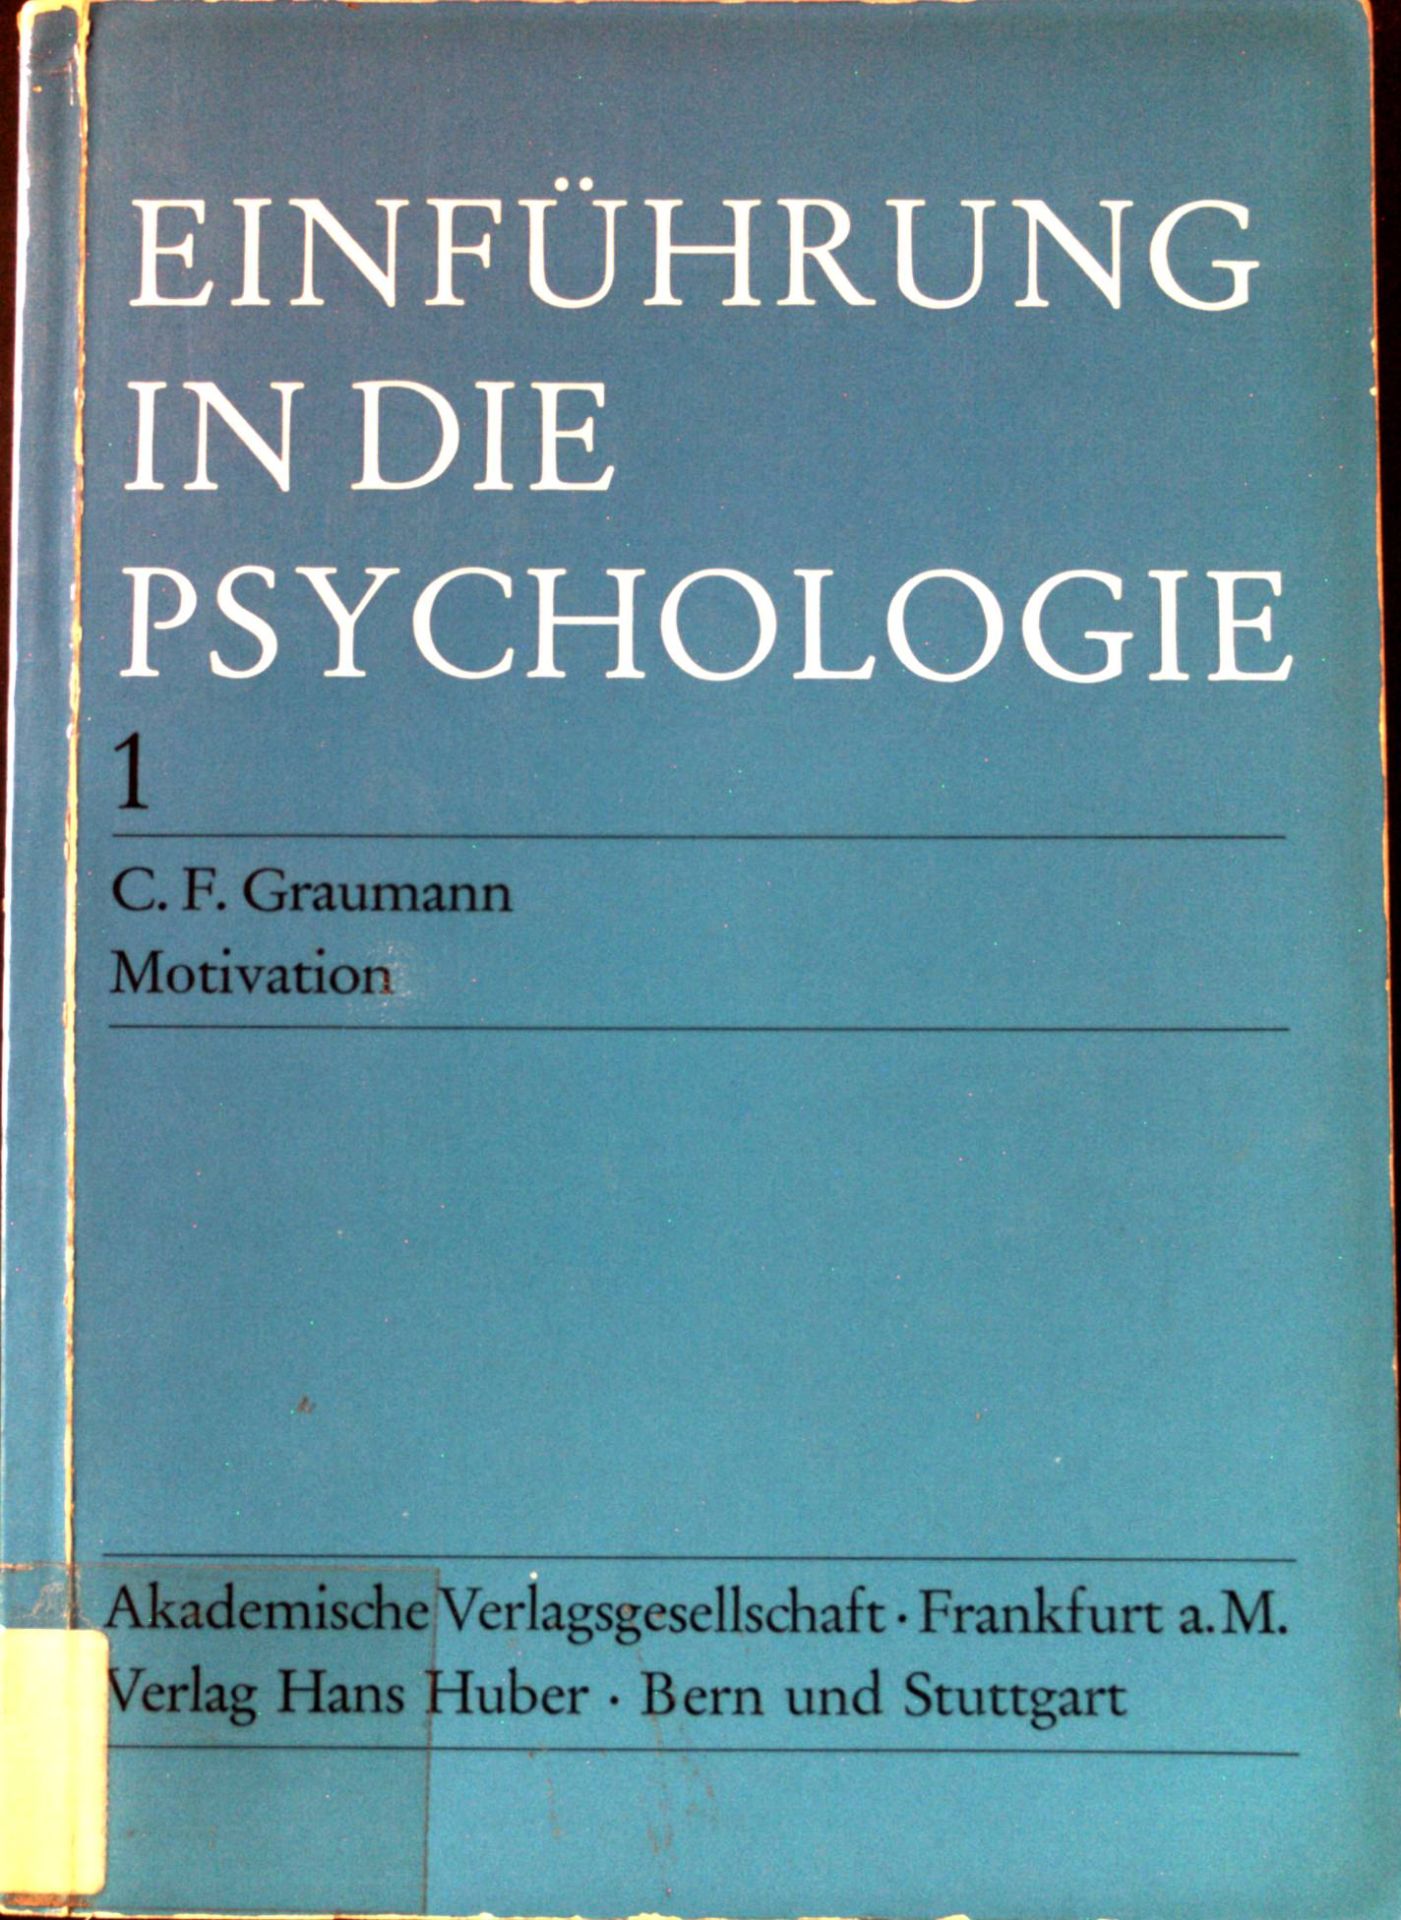 Einführung in die Psychologie 1: Motivation. - Graumann, C. F.